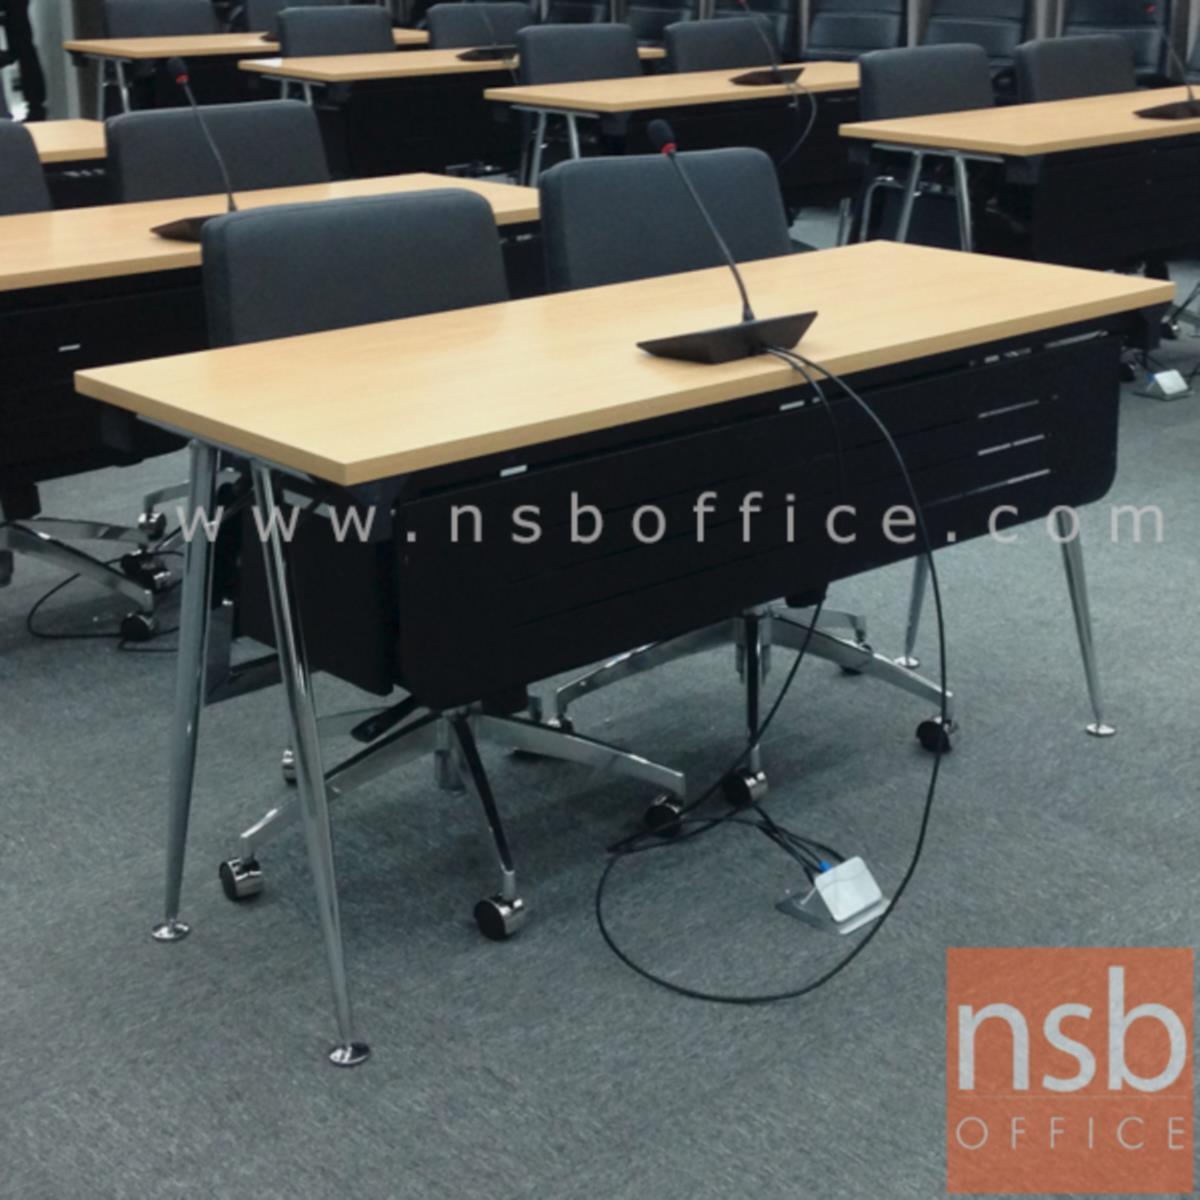 โต๊ะประชุมพับเก็บได้ รุ่น  Berline (เบอไลน์) ขนาด 150W, 180W*60D ,75D cm.  พร้อมบังโป๊เหล็ก ขาเหล็ก